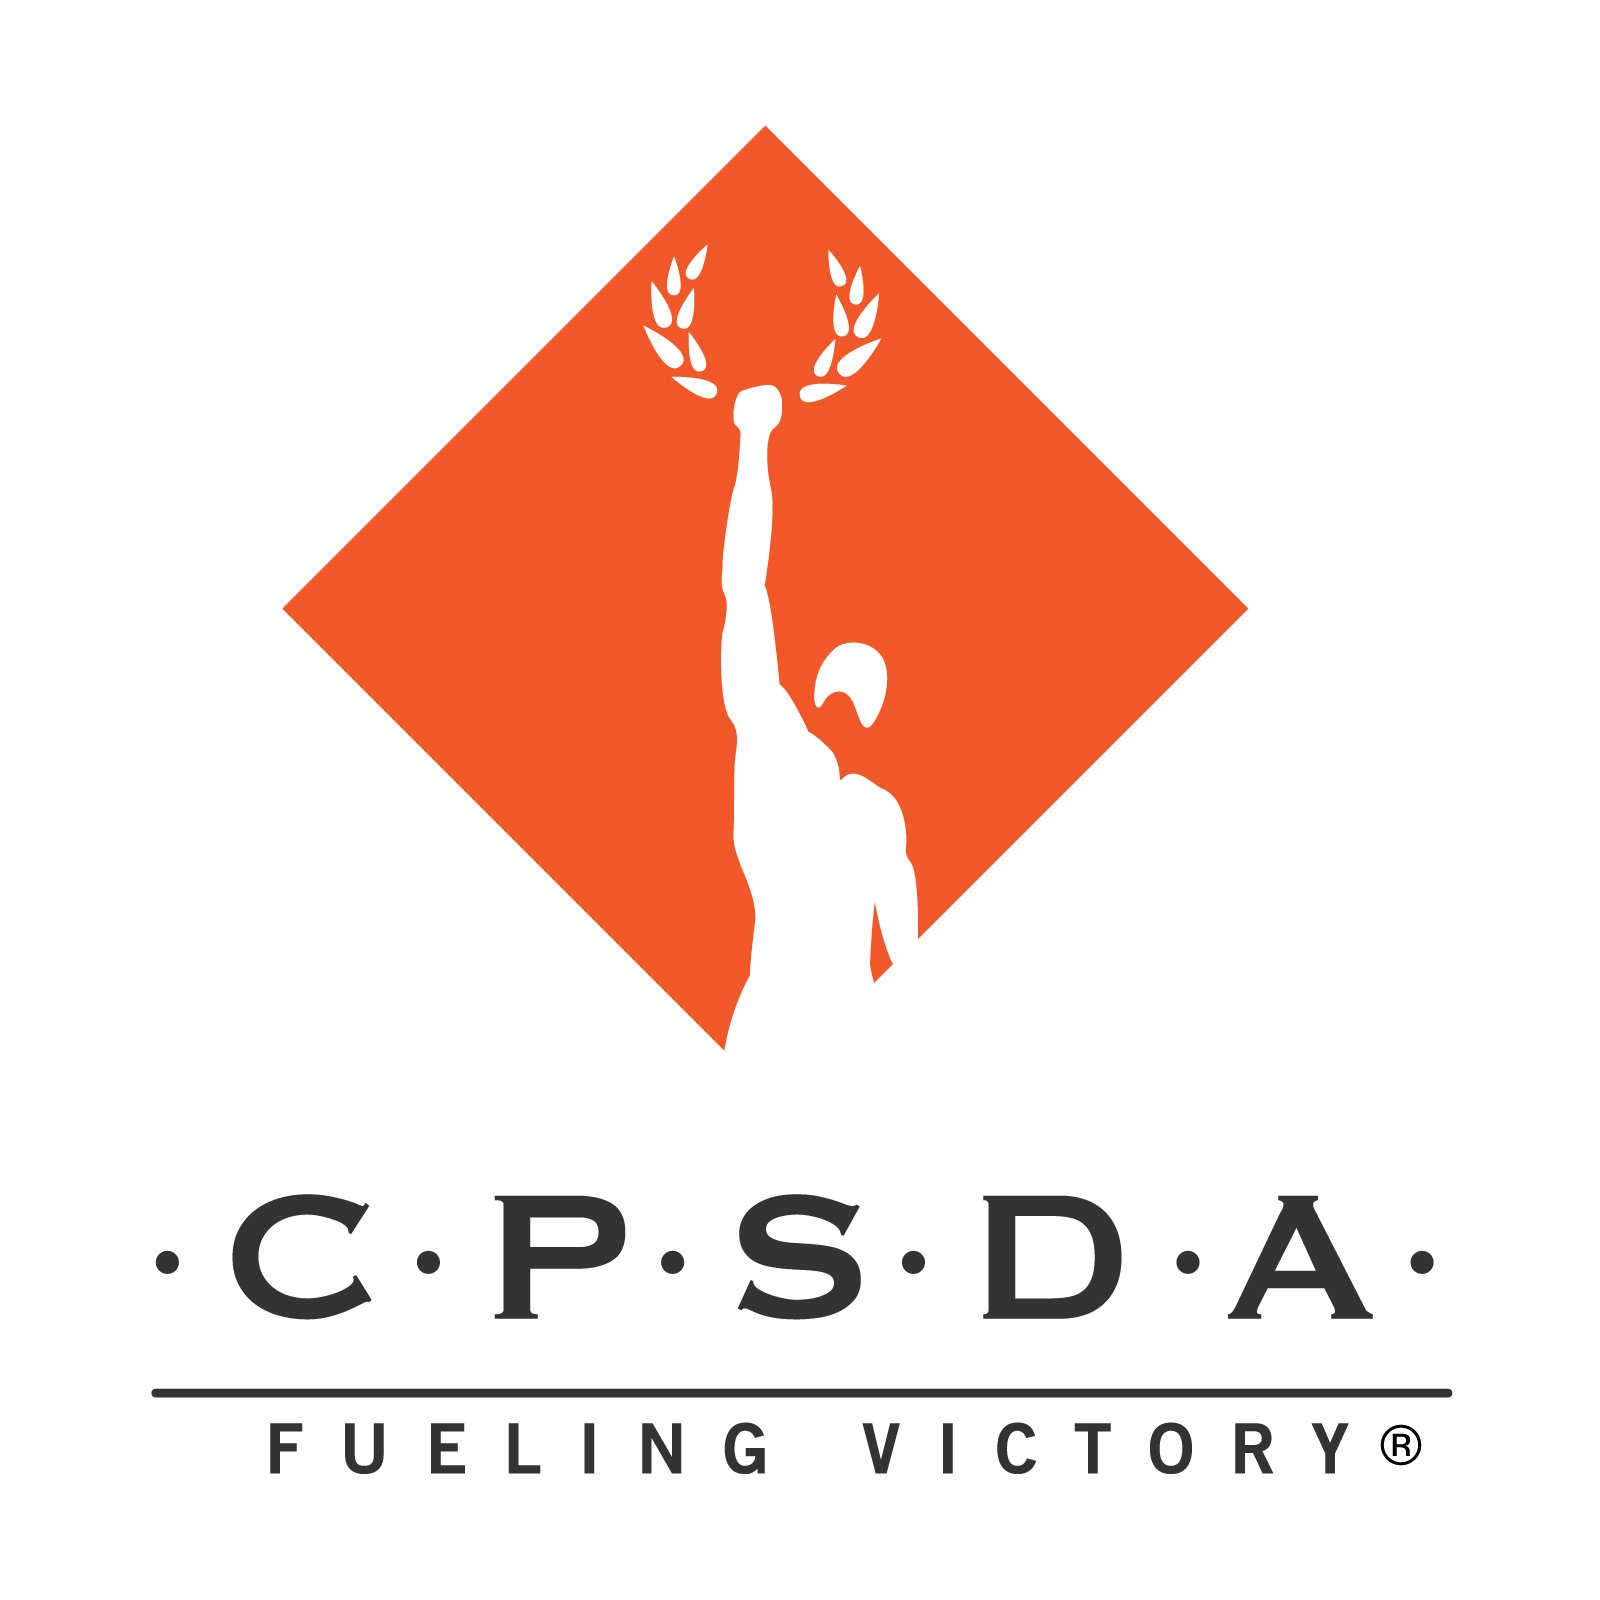 cpsda-logo-orange-dark-2.jpeg